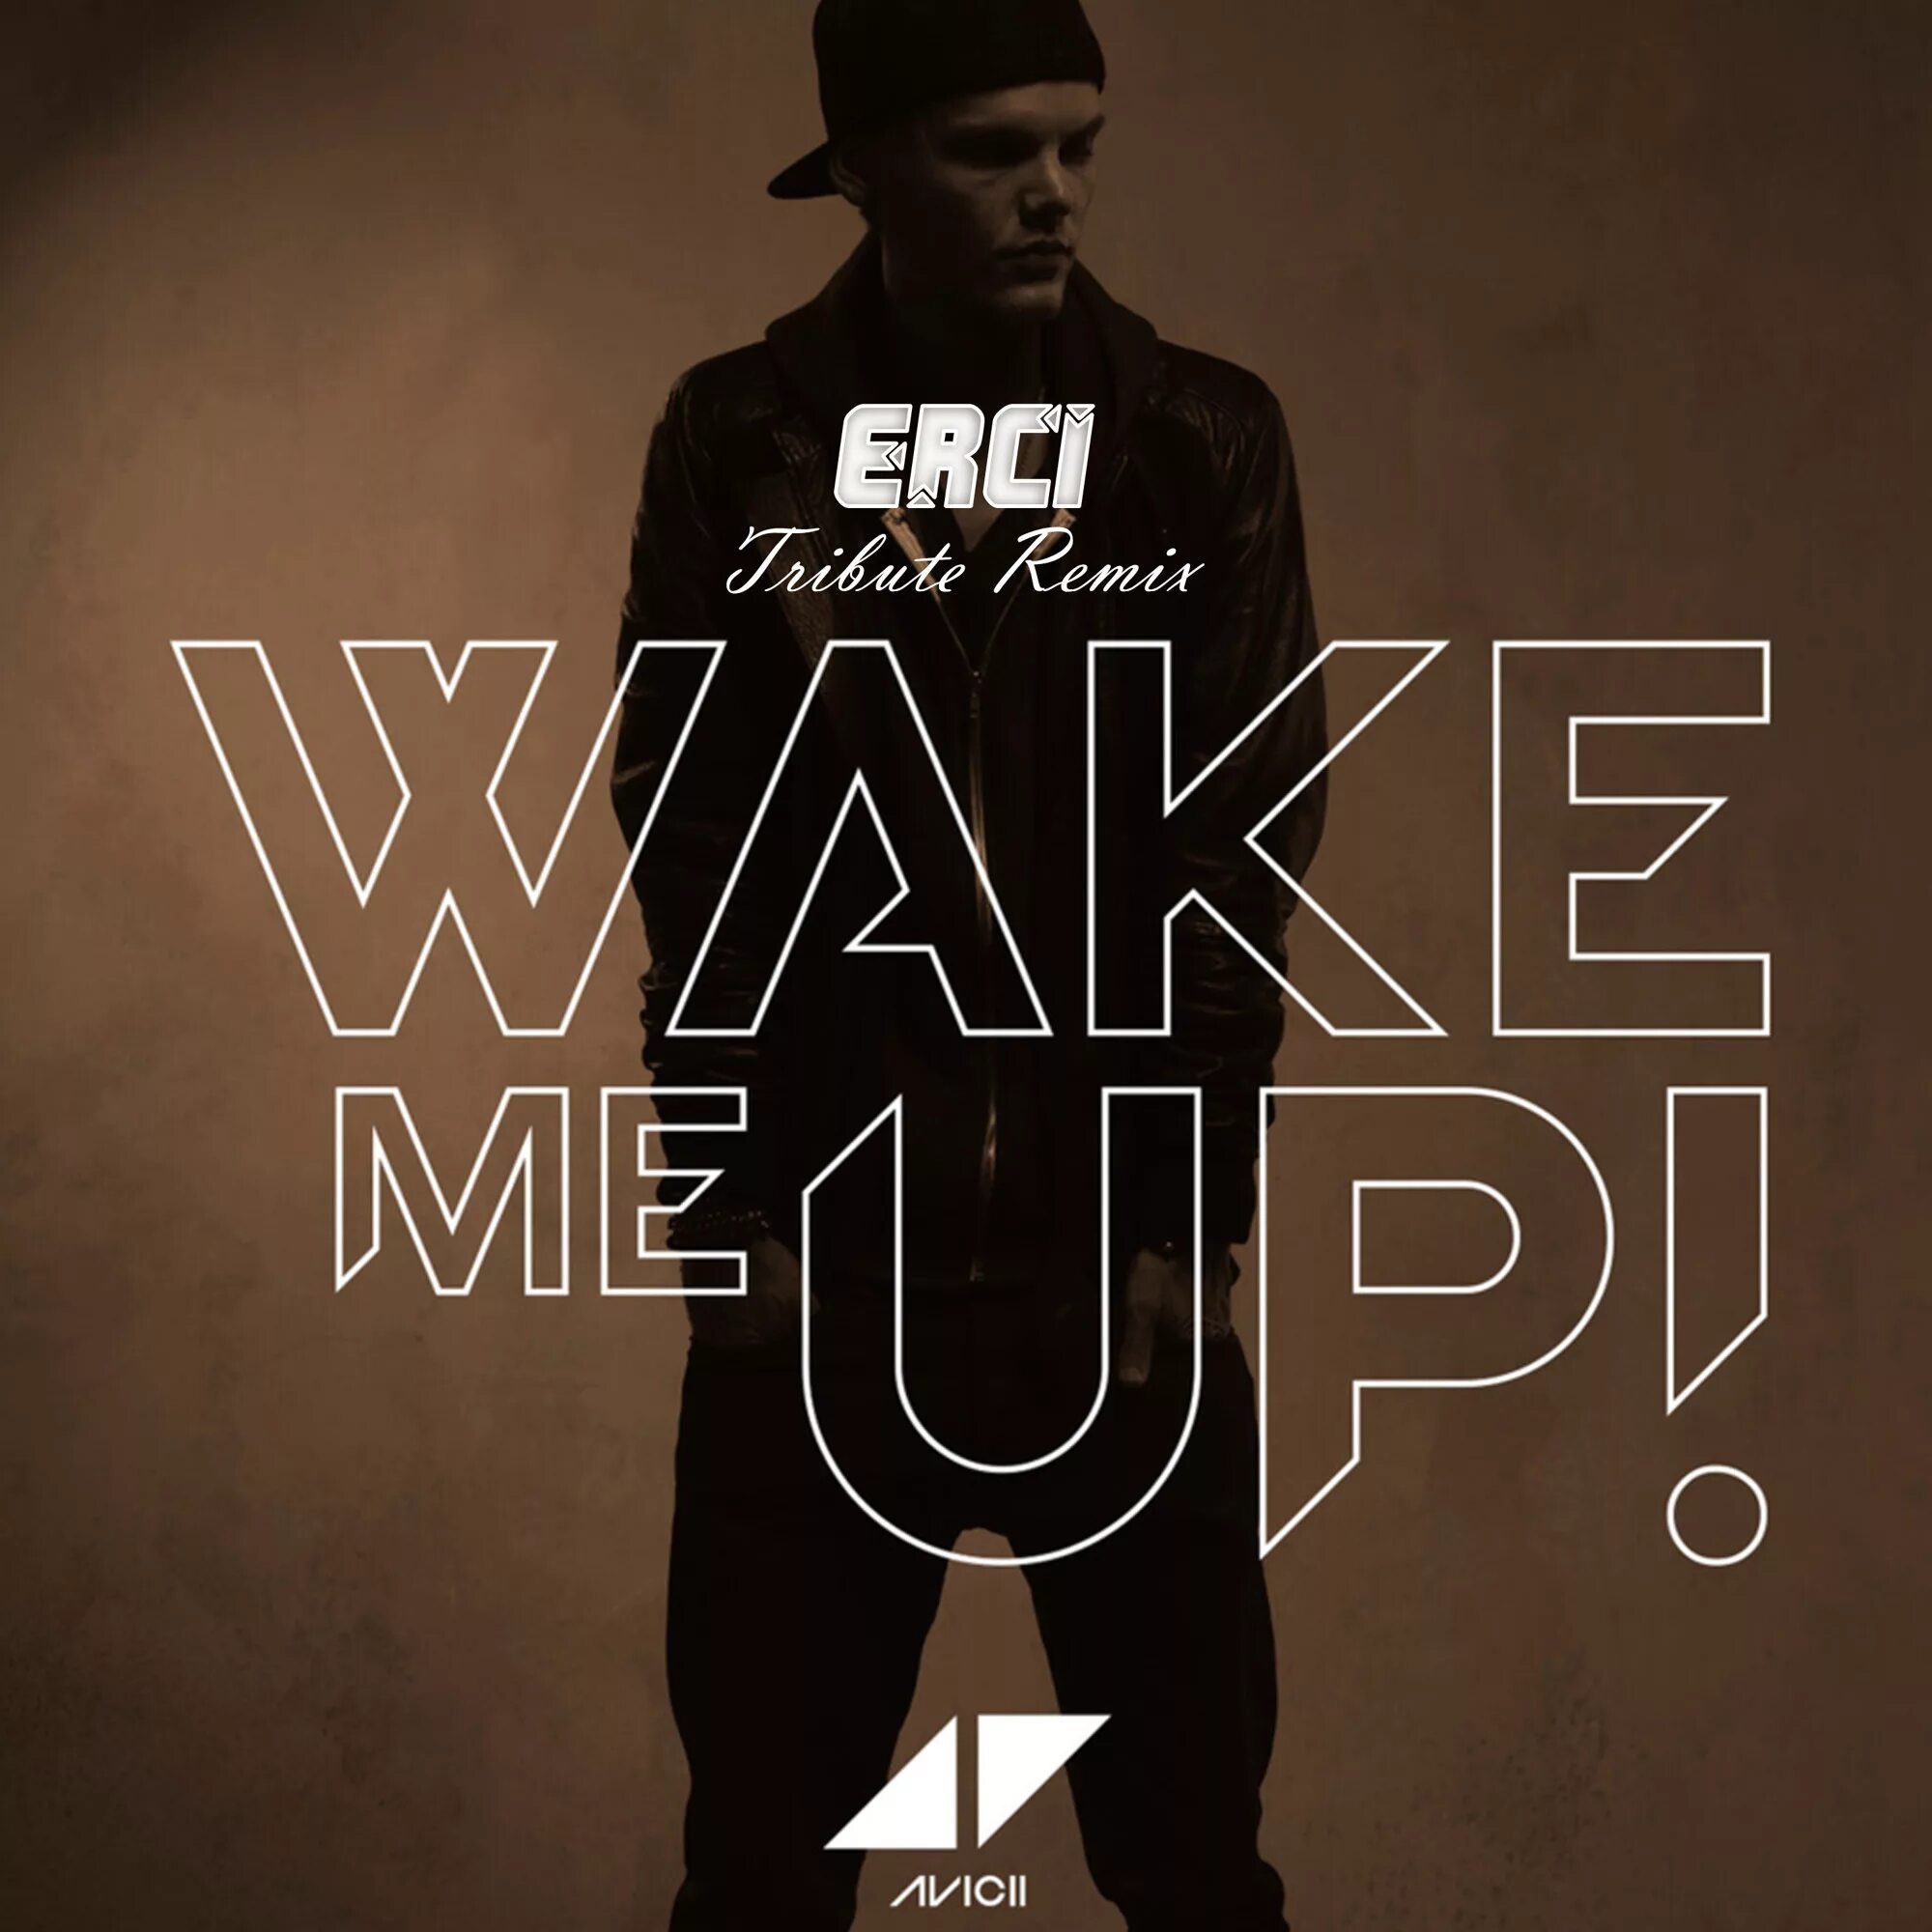 Avicii Wake me up. Wake me up Авичи. Wake me up Avicii альбом. Avicii feat. Aloe Blacc - Wake me up. Side me up